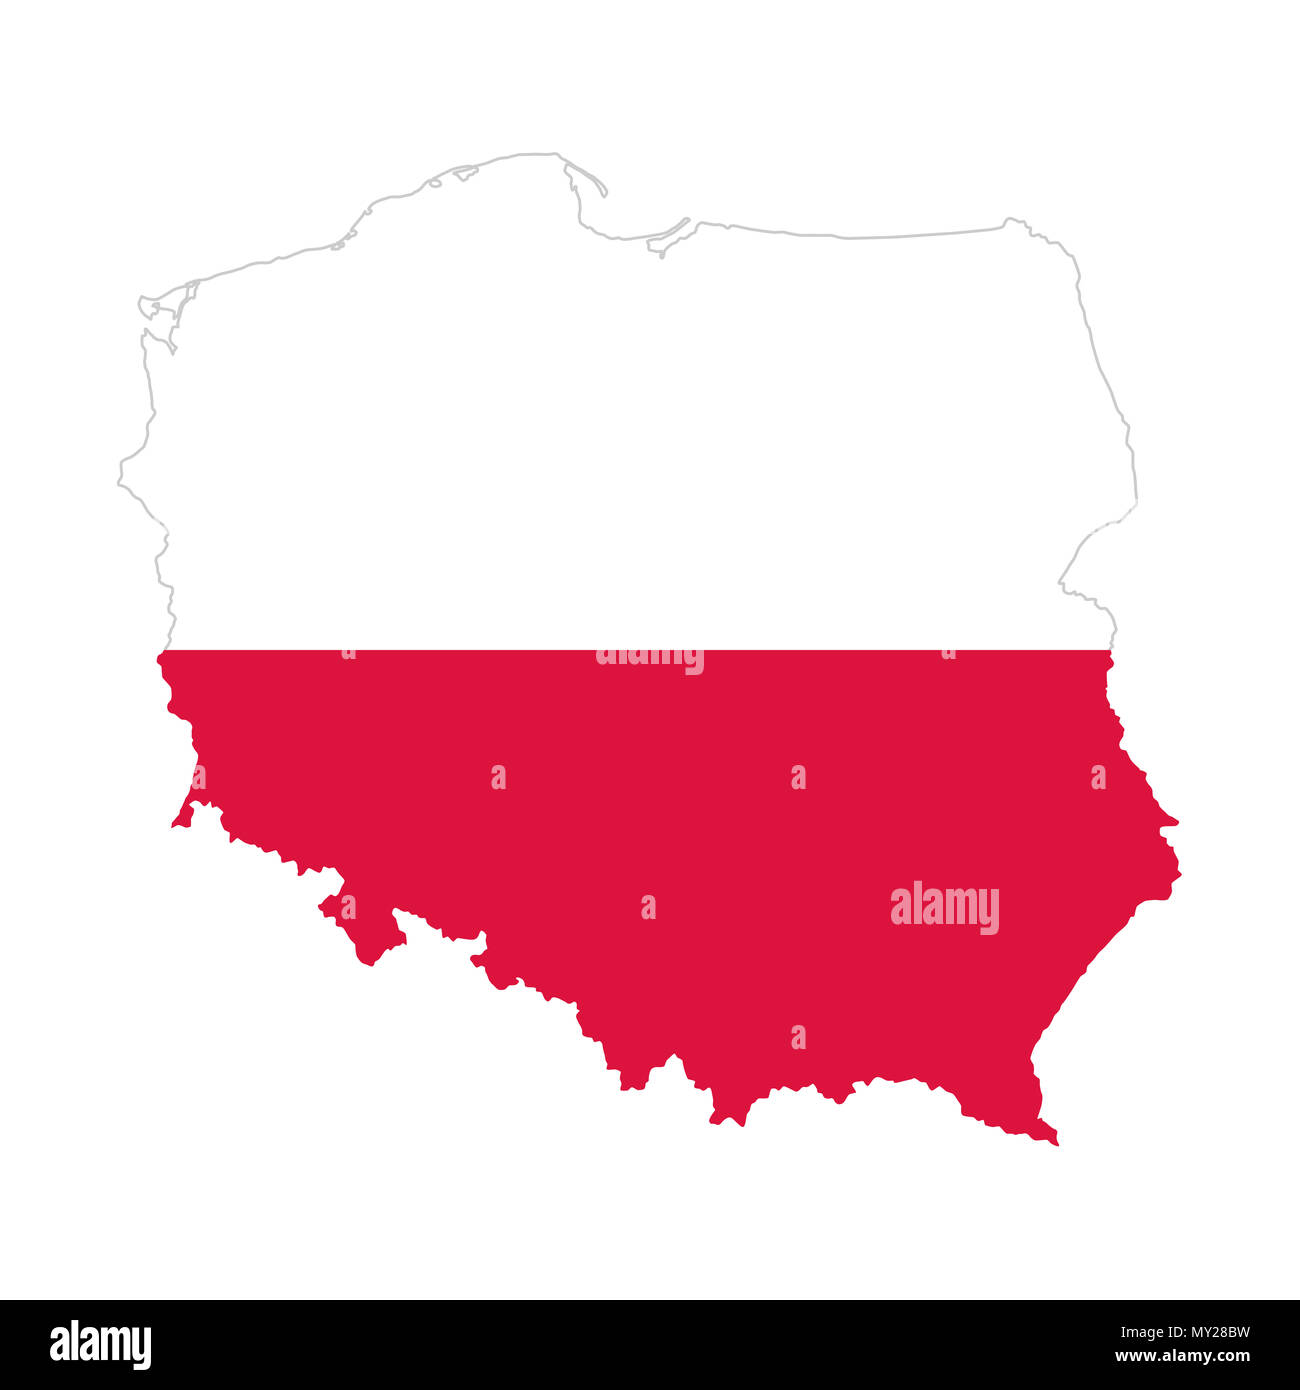 Flagge Polens im Land Silhouette. Bicolor. Zwei horizontale Streifen gleicher Breite, weiß und rot, in der Gliederung der Republik Polen. Stockfoto